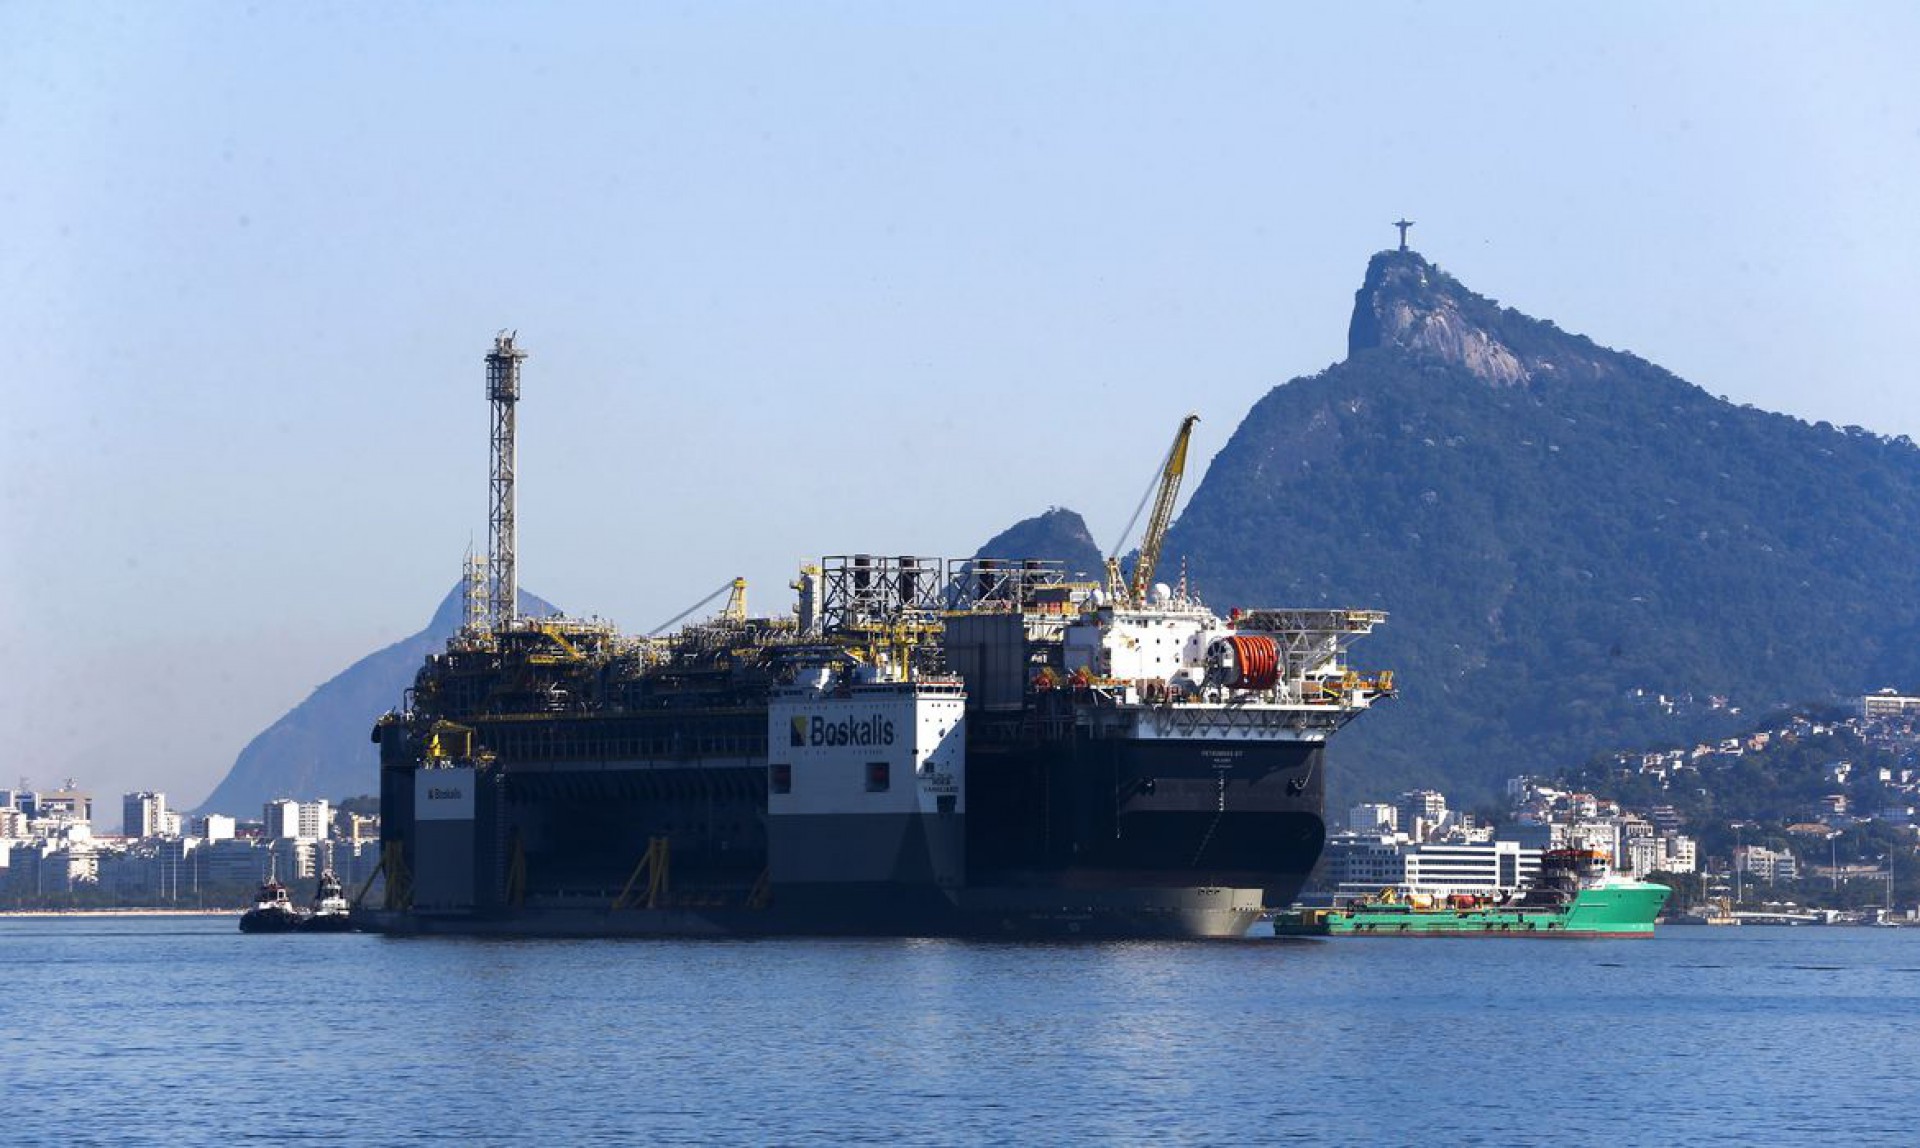 A Petrobras anunciou a chegada da plataforma de petróleo, P-67, ancorada na Baía de Guanabara, destinada ao Sistema de Produção do Campo de Lula, no pré-sal da Bacia de Santos. (Foto: Tânia Rêgo/Agência Brasil)